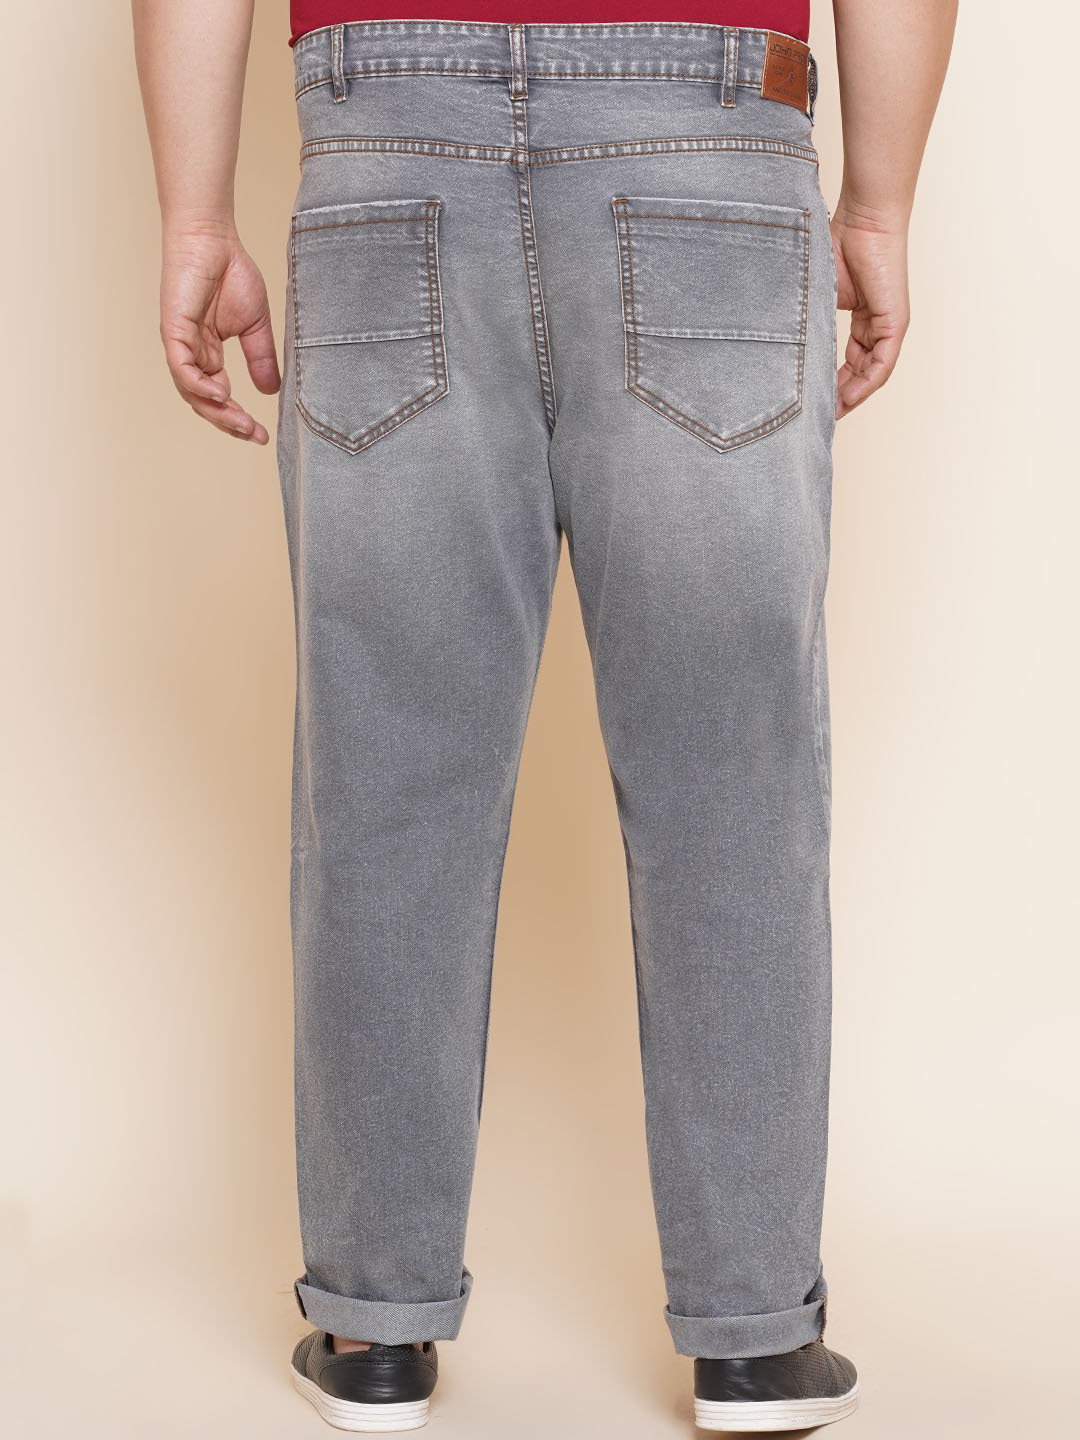 bottomwear/jeans/JPJ27014/jpj27014-5.jpg